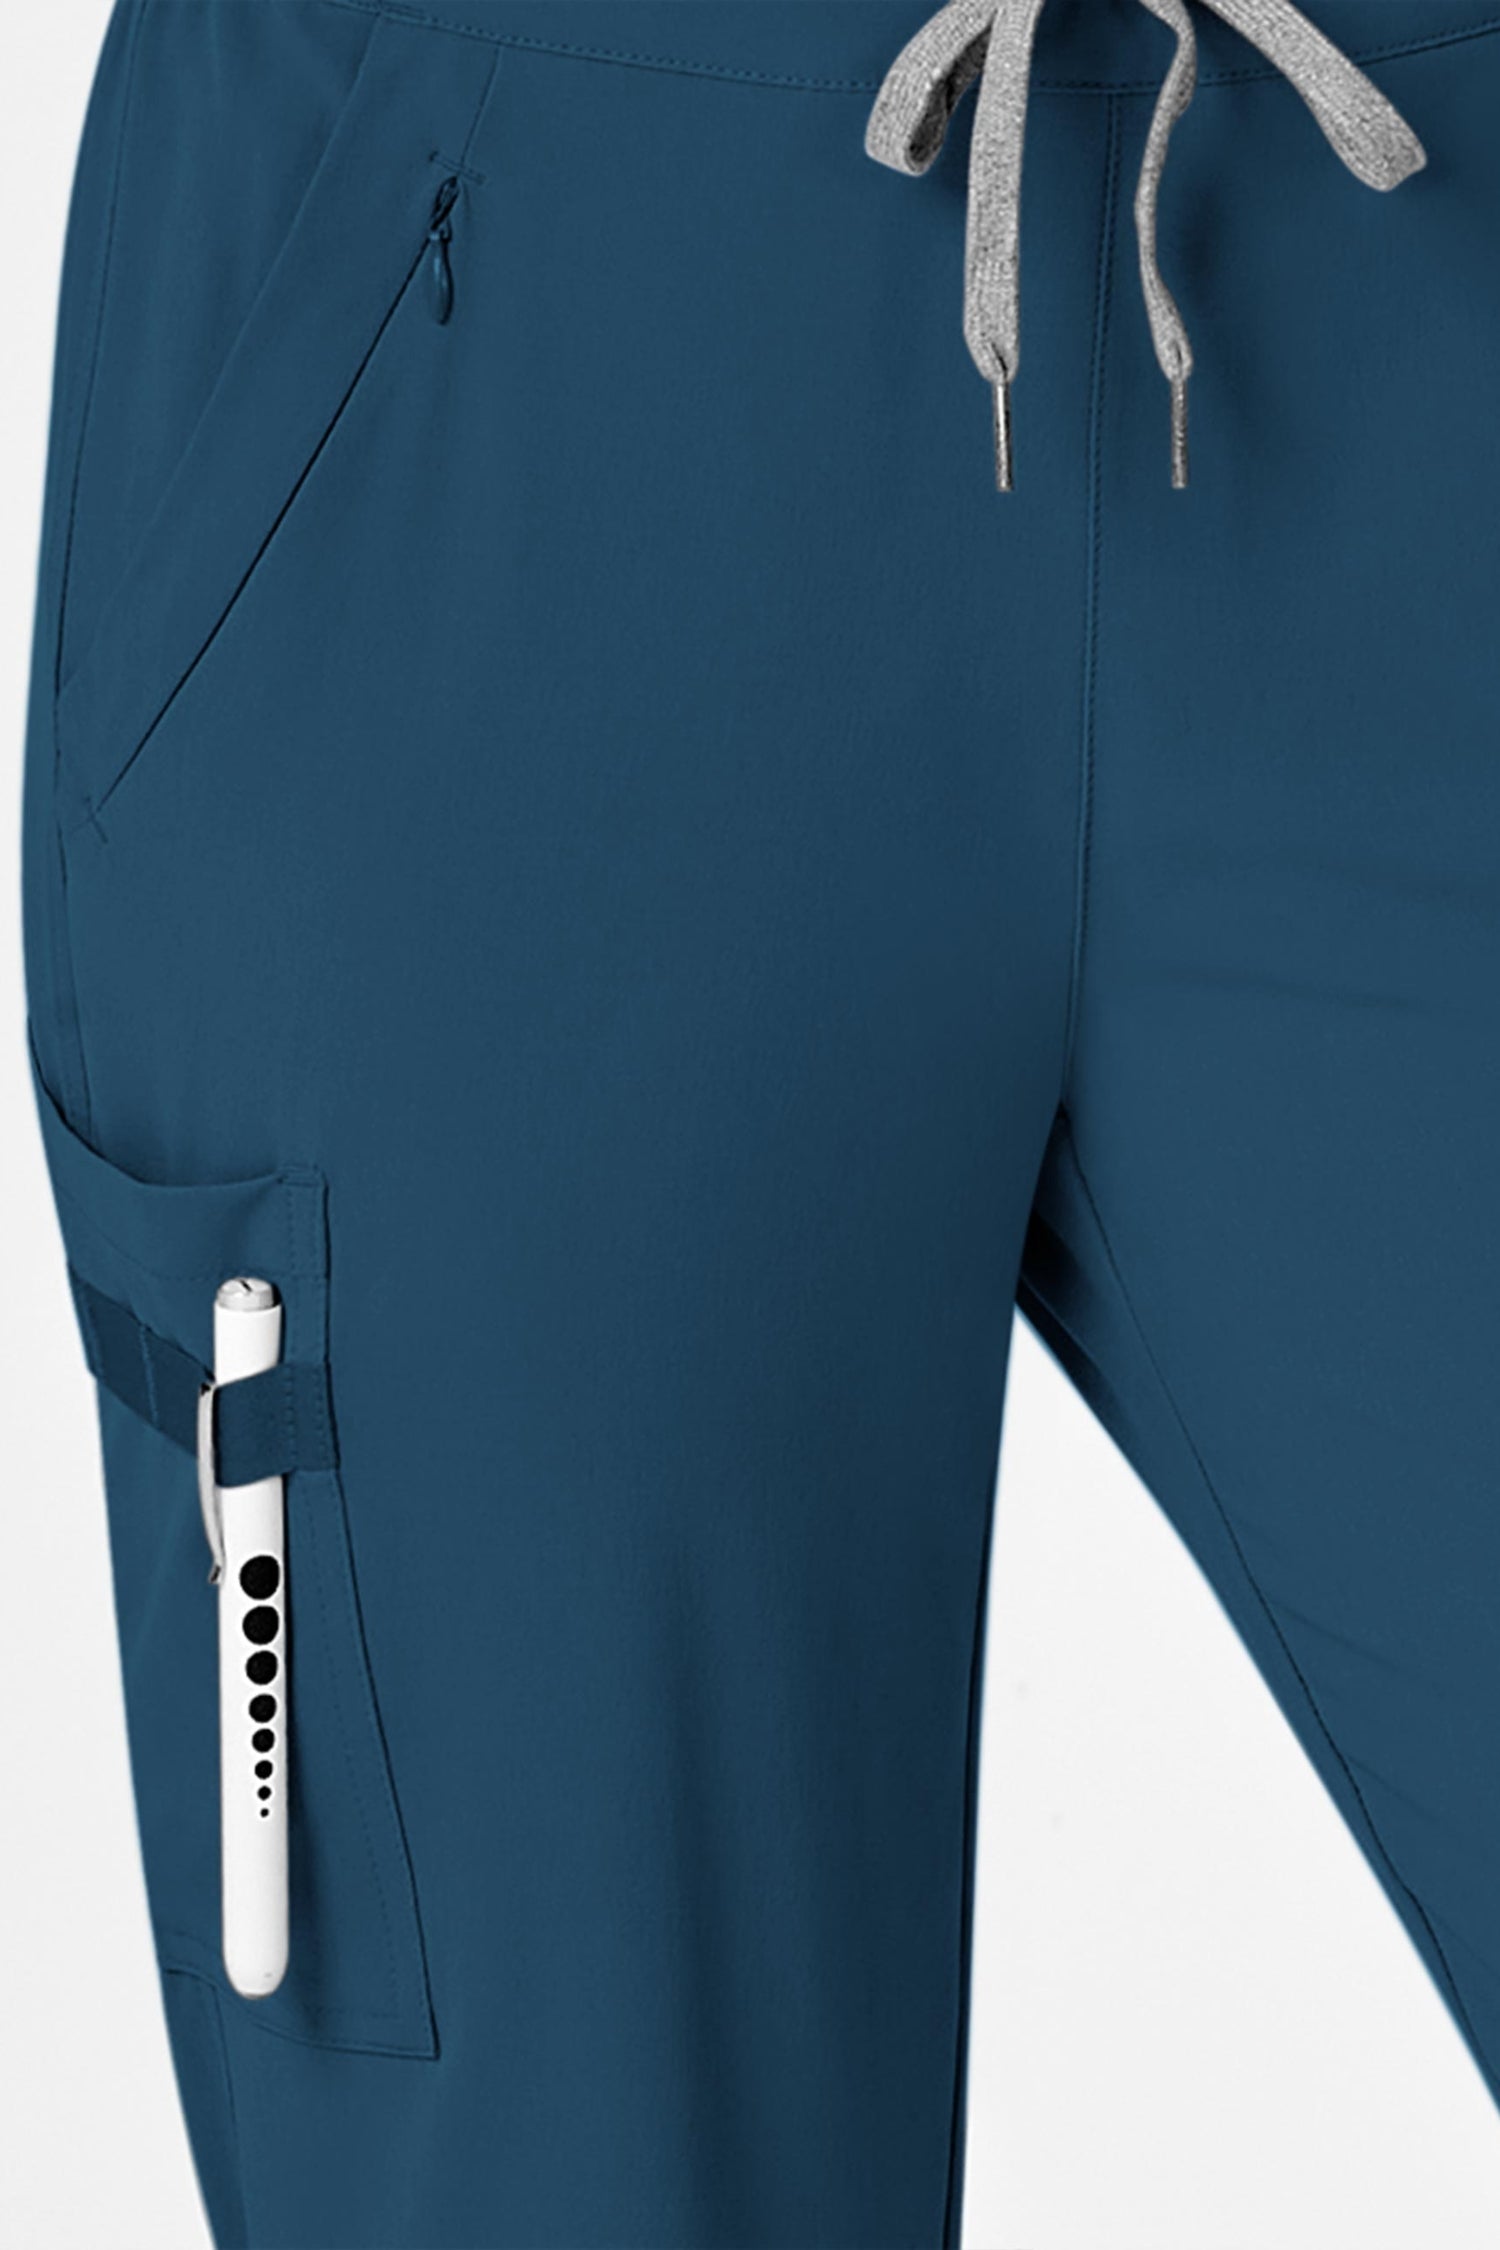 Vue arrière d’une pantacourt médical bleu turquoise avec poches à fermeture en polyester spandex